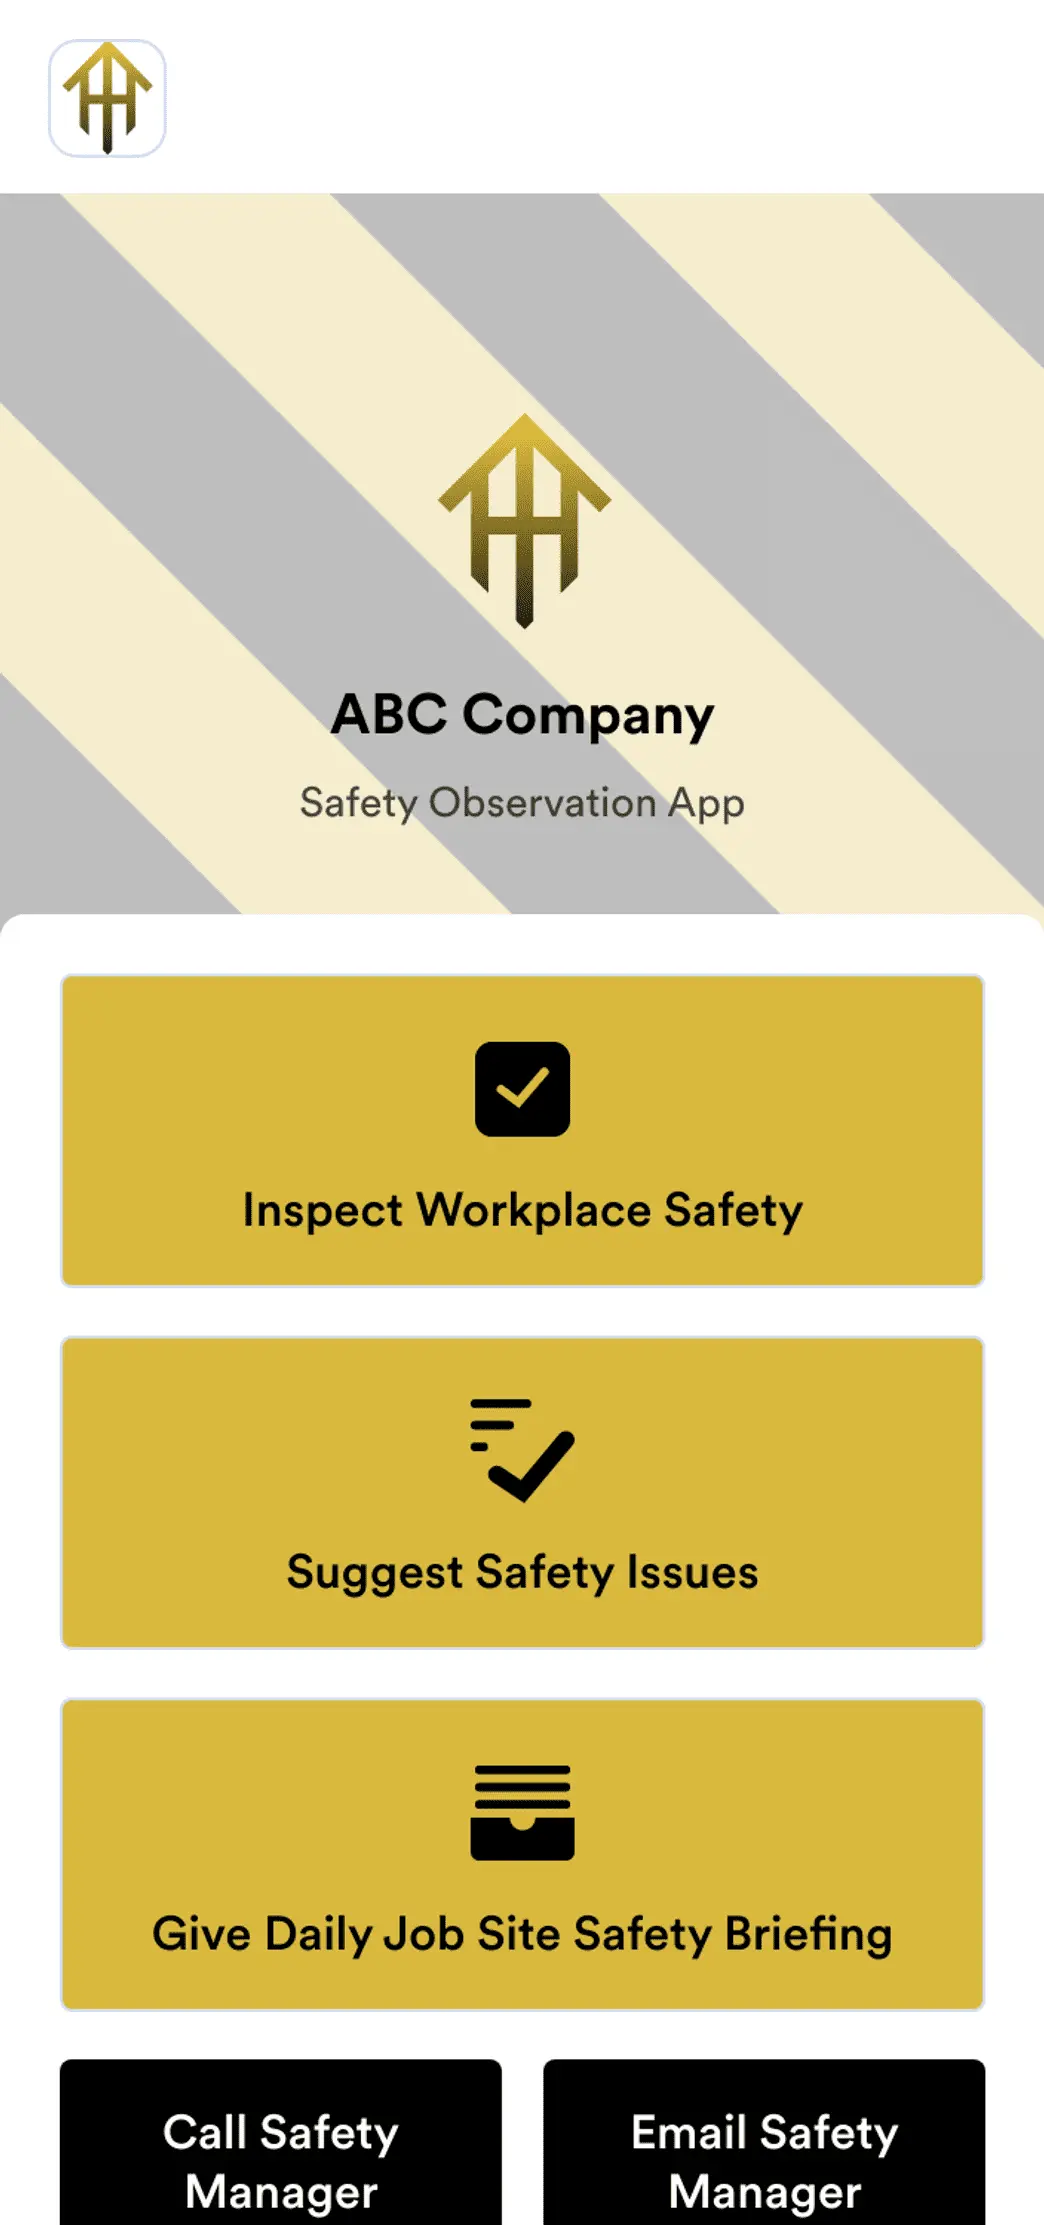 Safety Observation App